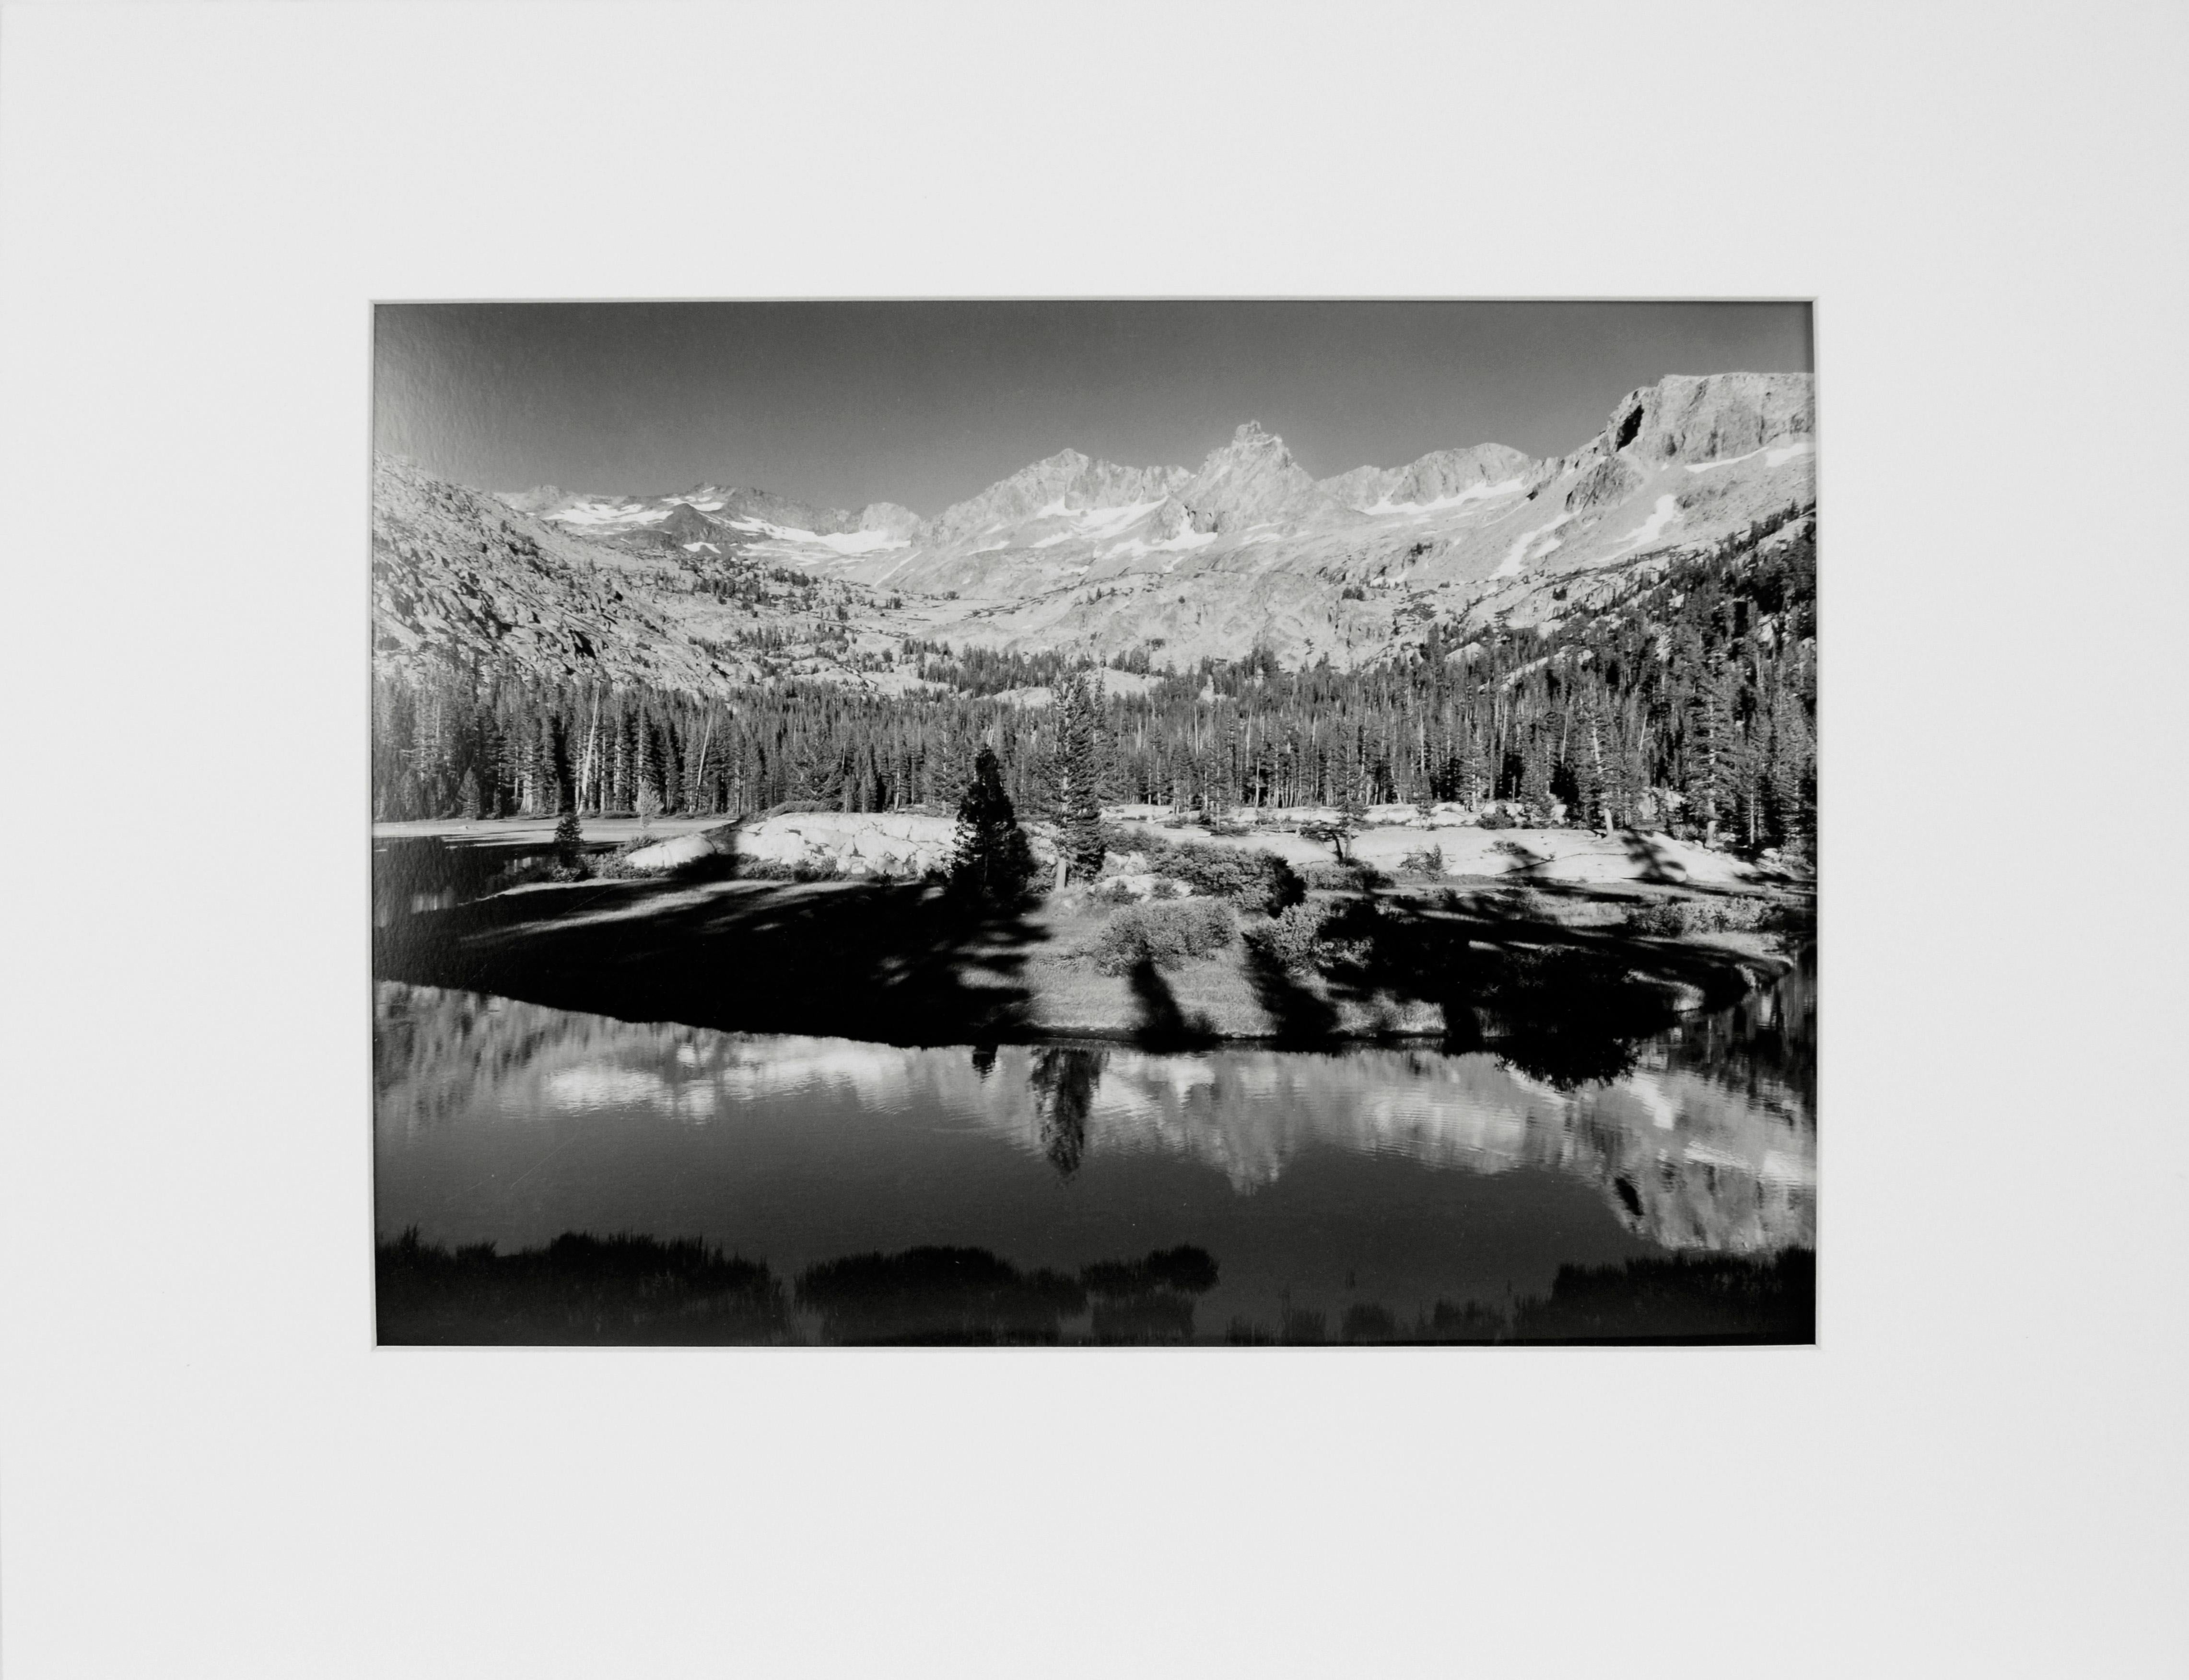 Black and White Photograph Jeff Nixon - "Yosemite" - Photographie de paysage en noir et blanc AP